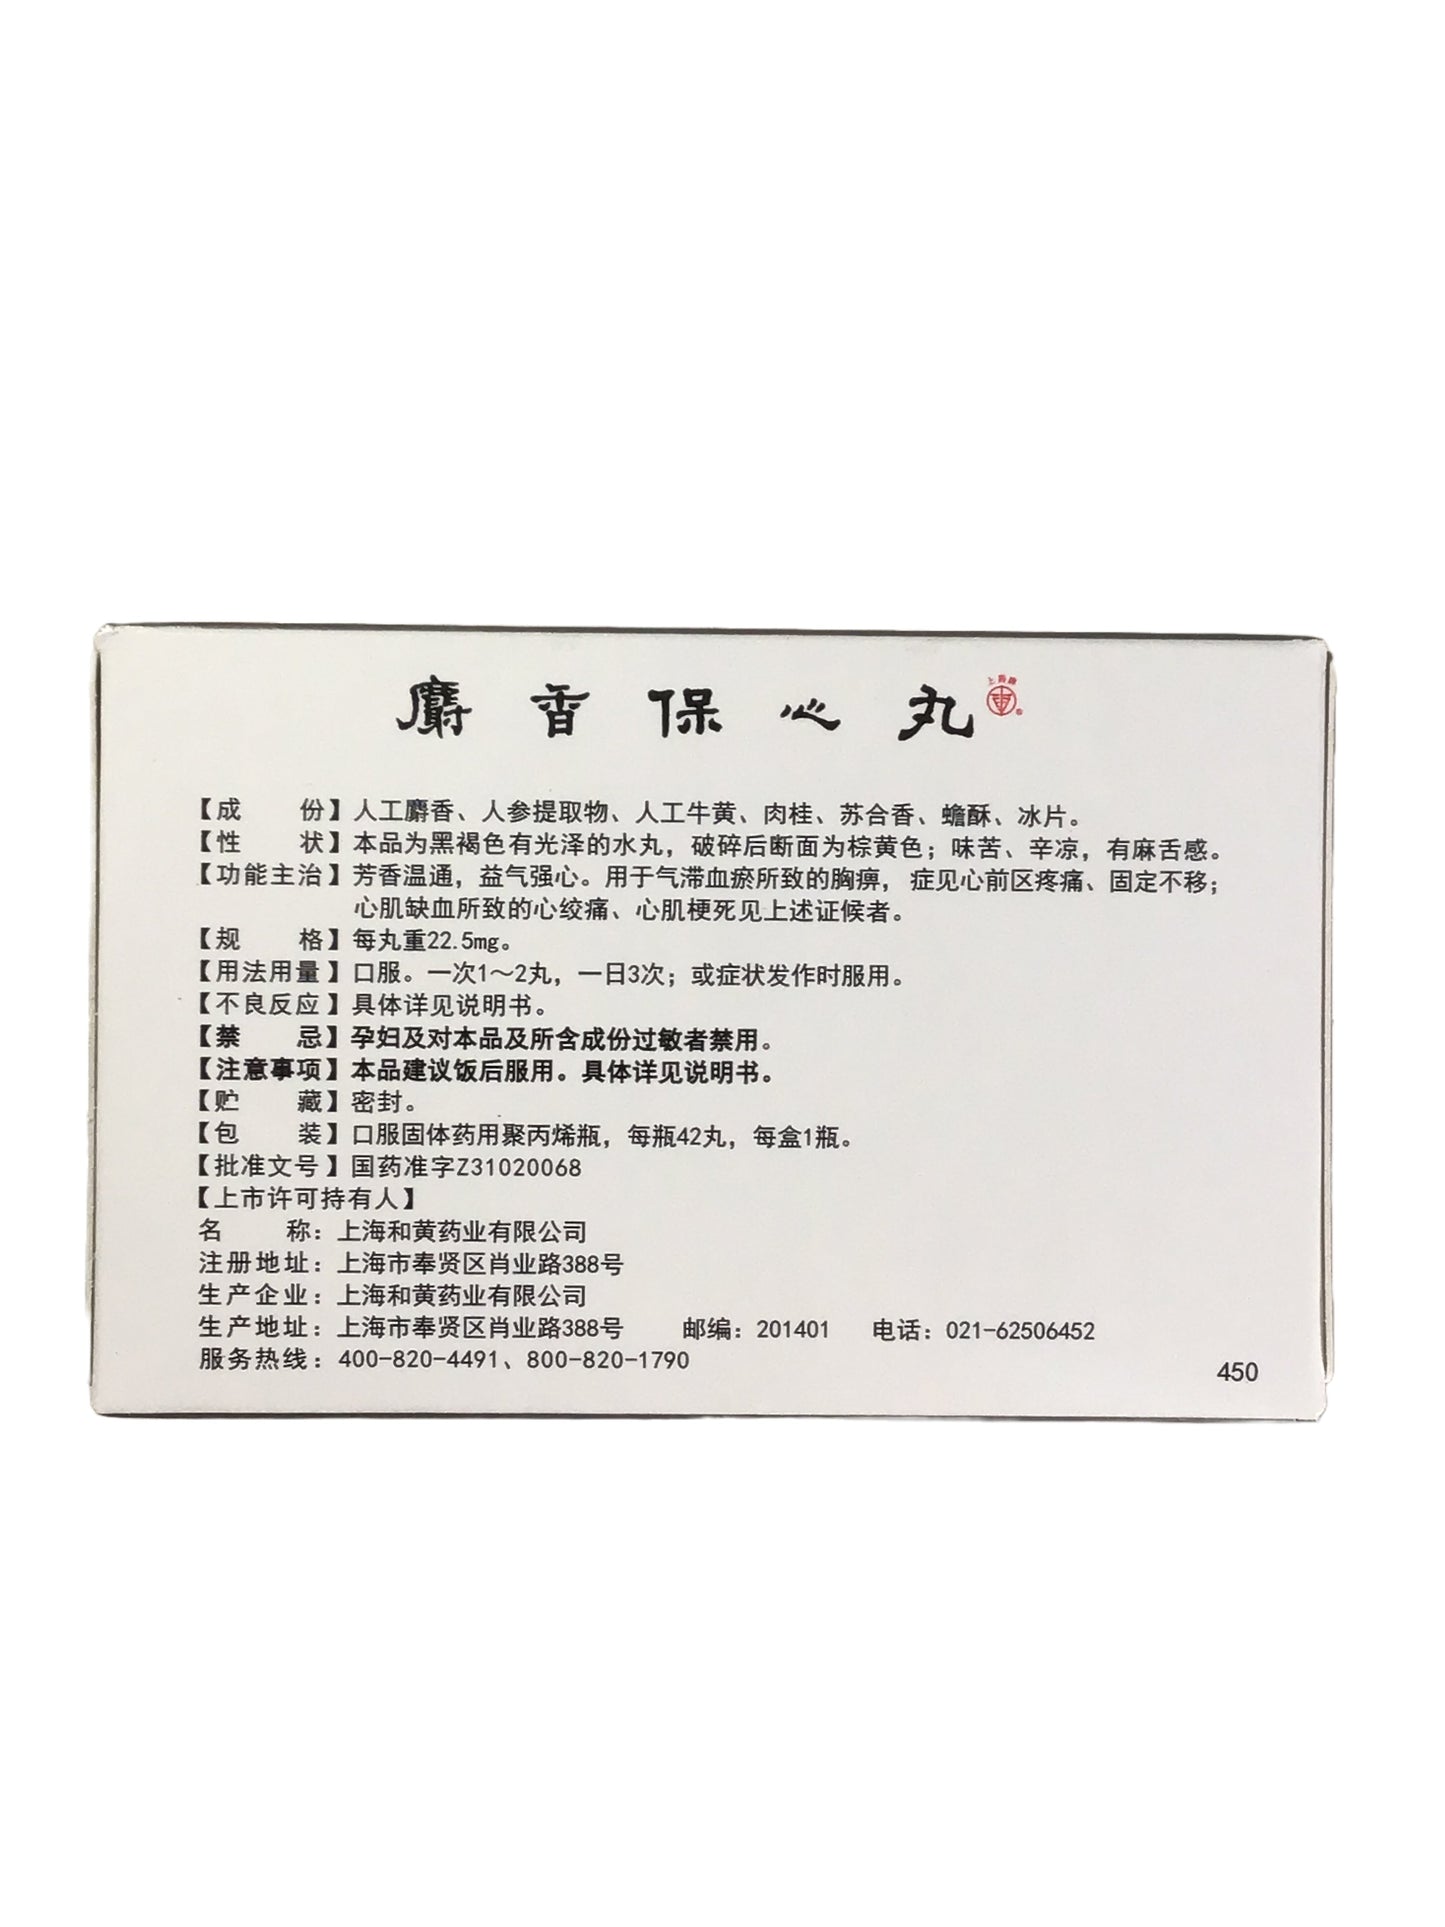 Musk Baoxin Pills (She Xiang Bao Xin Wan) 上药牌 麝香保心丸